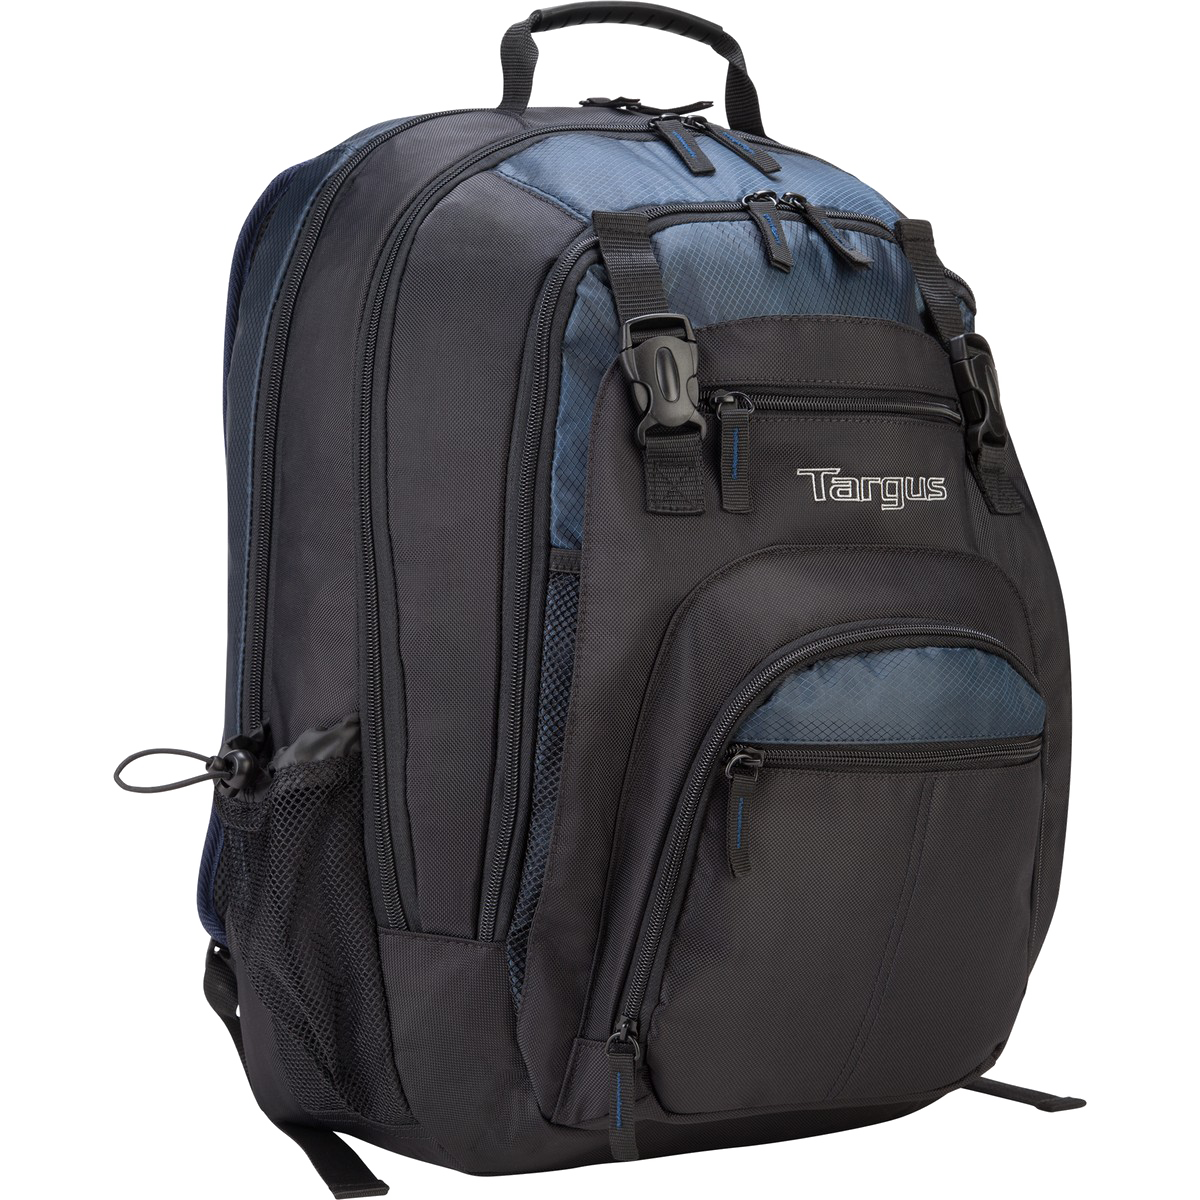 Black Laptop Backpack PNG Image Background